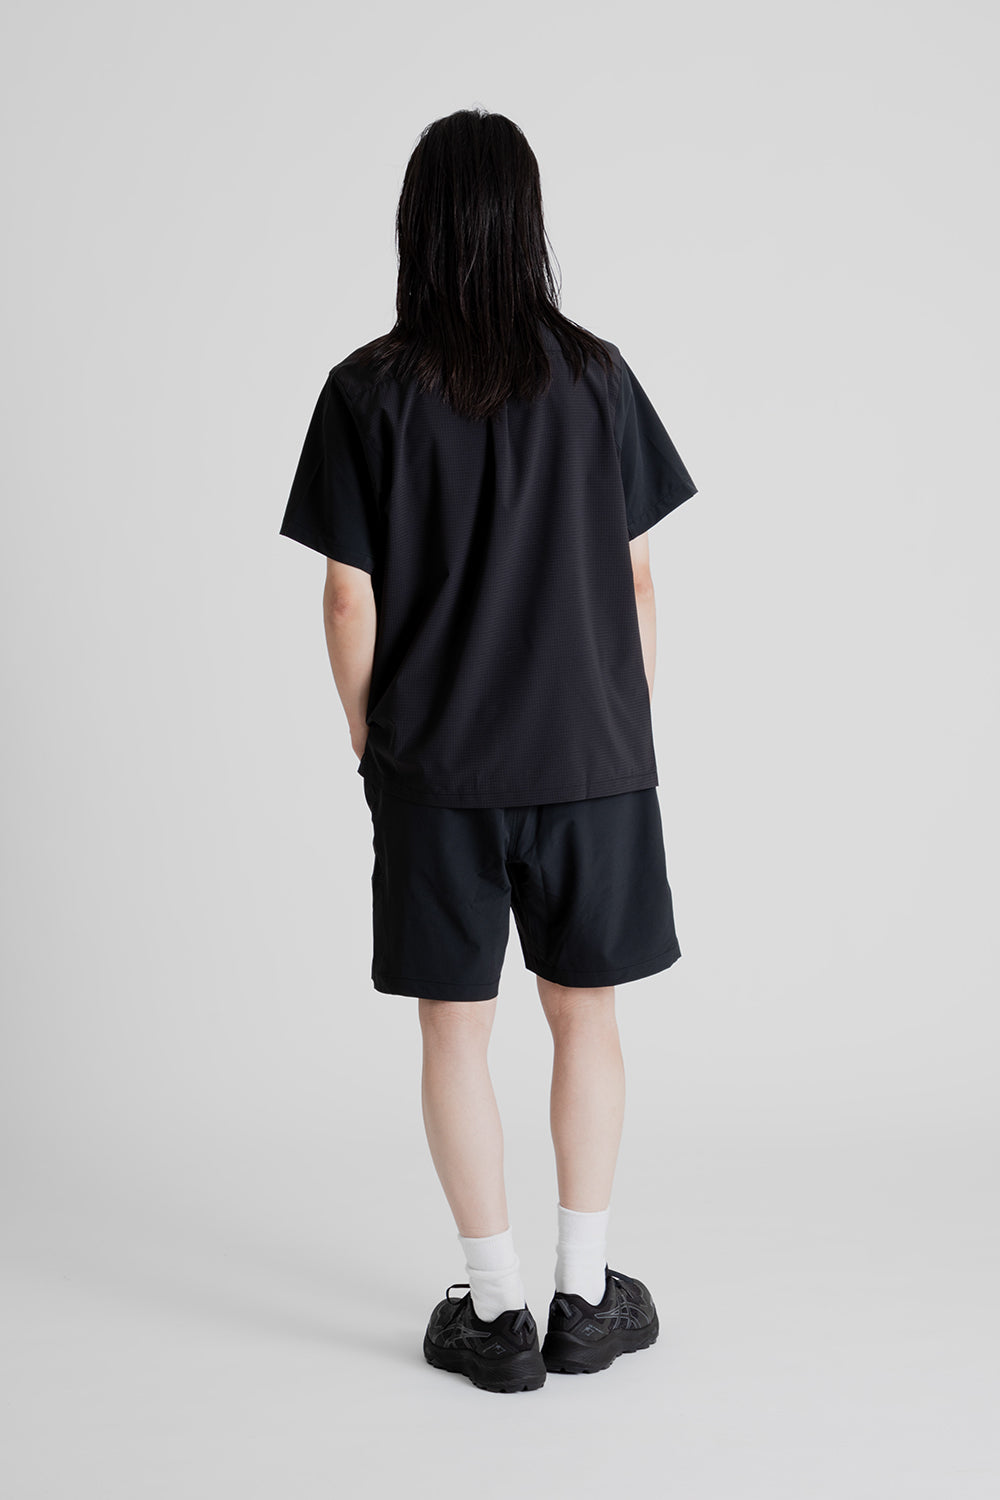 Cayl EQ Hybrid Short Sleeve Shirt in Black